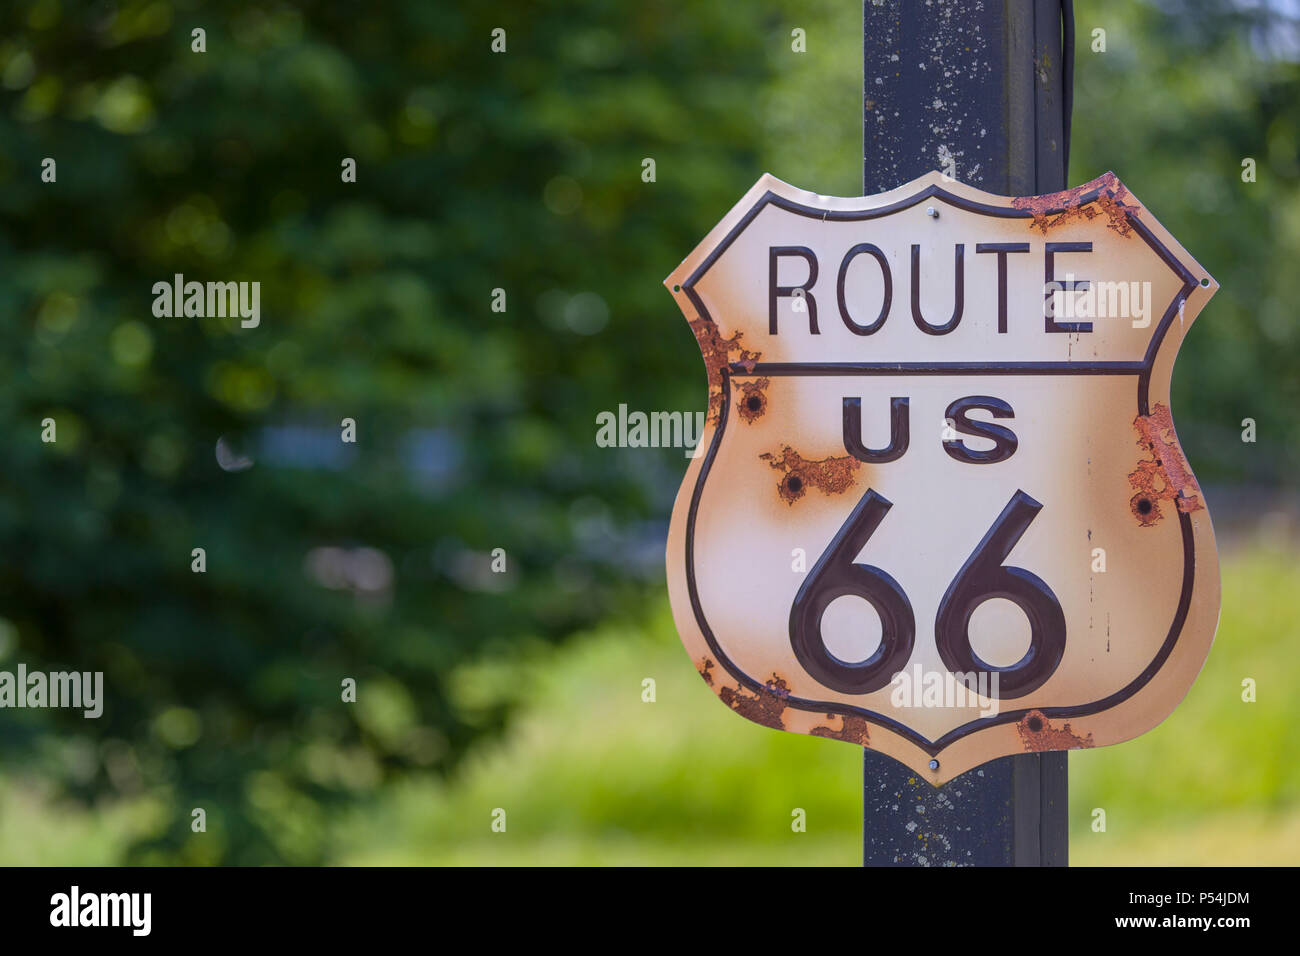 Rustikale Suche US Route 66 Wegweiser oder Beschilderung mit  Einschusslöchern Nahaufnahme Stockfotografie - Alamy